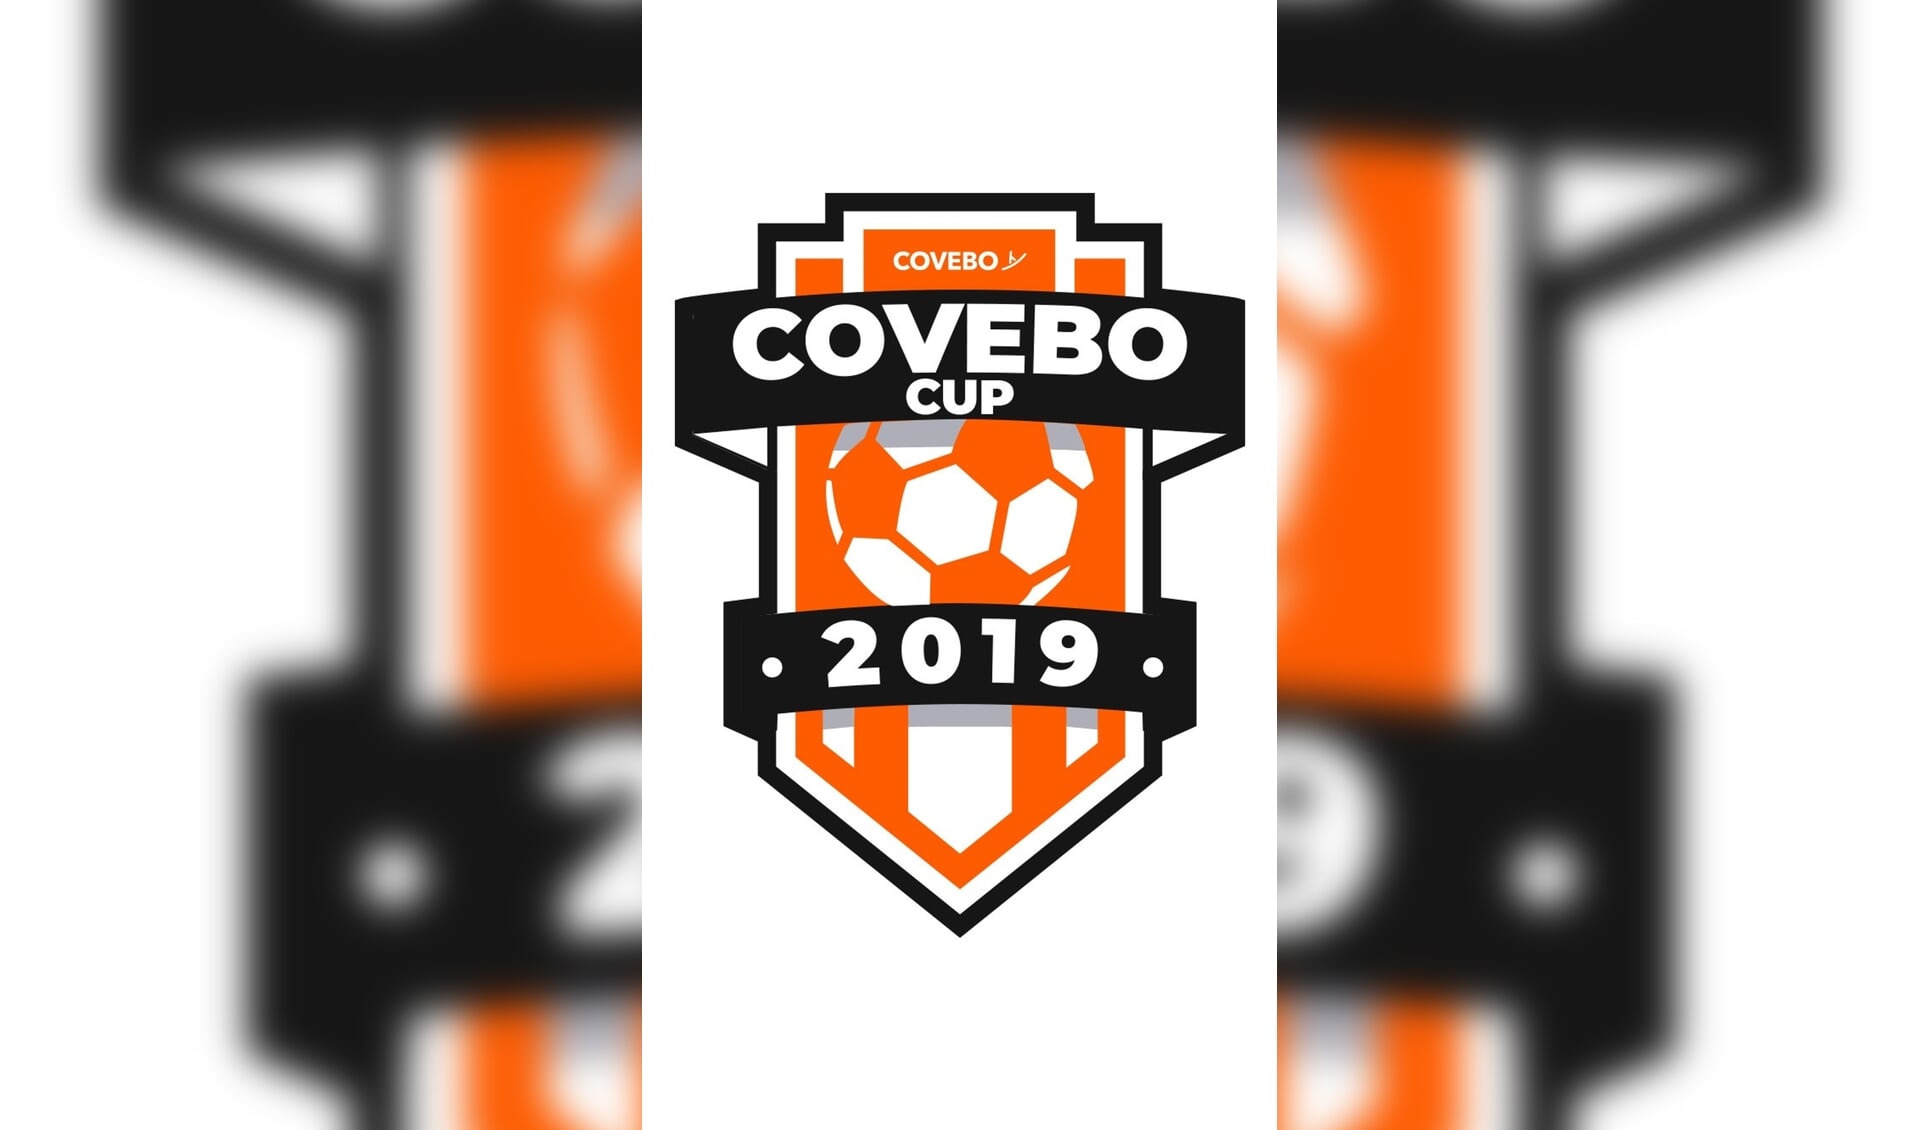 Het officiële logo van de Covebo Cup